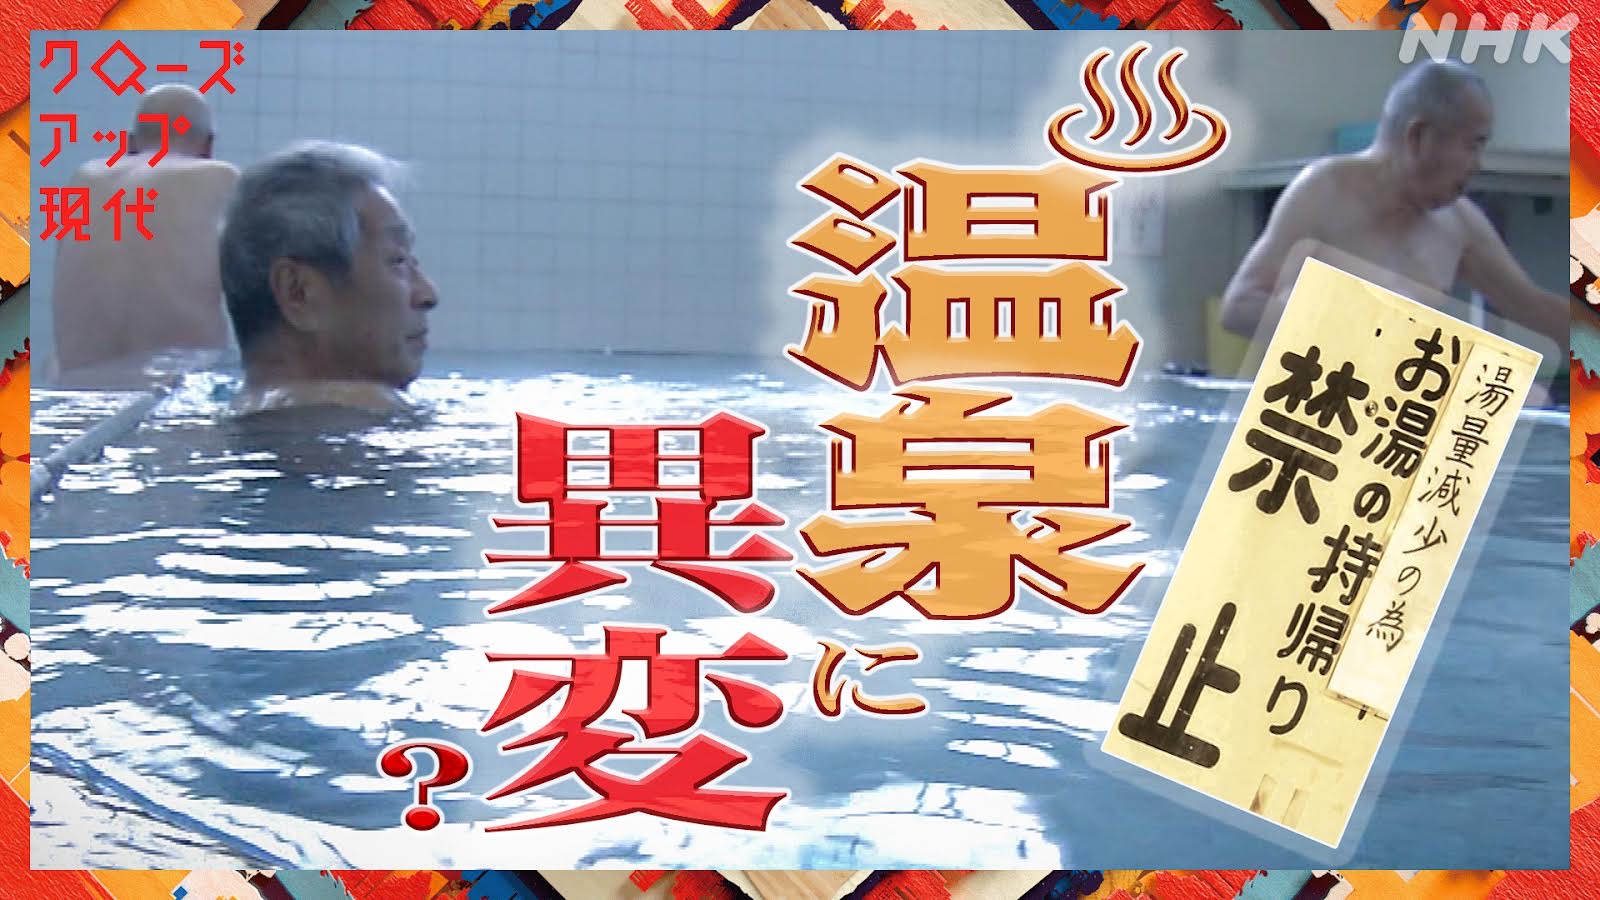 ニッポンの温泉に異変!? 湯の“枯渇”を防ぐには - NHK クローズアップ